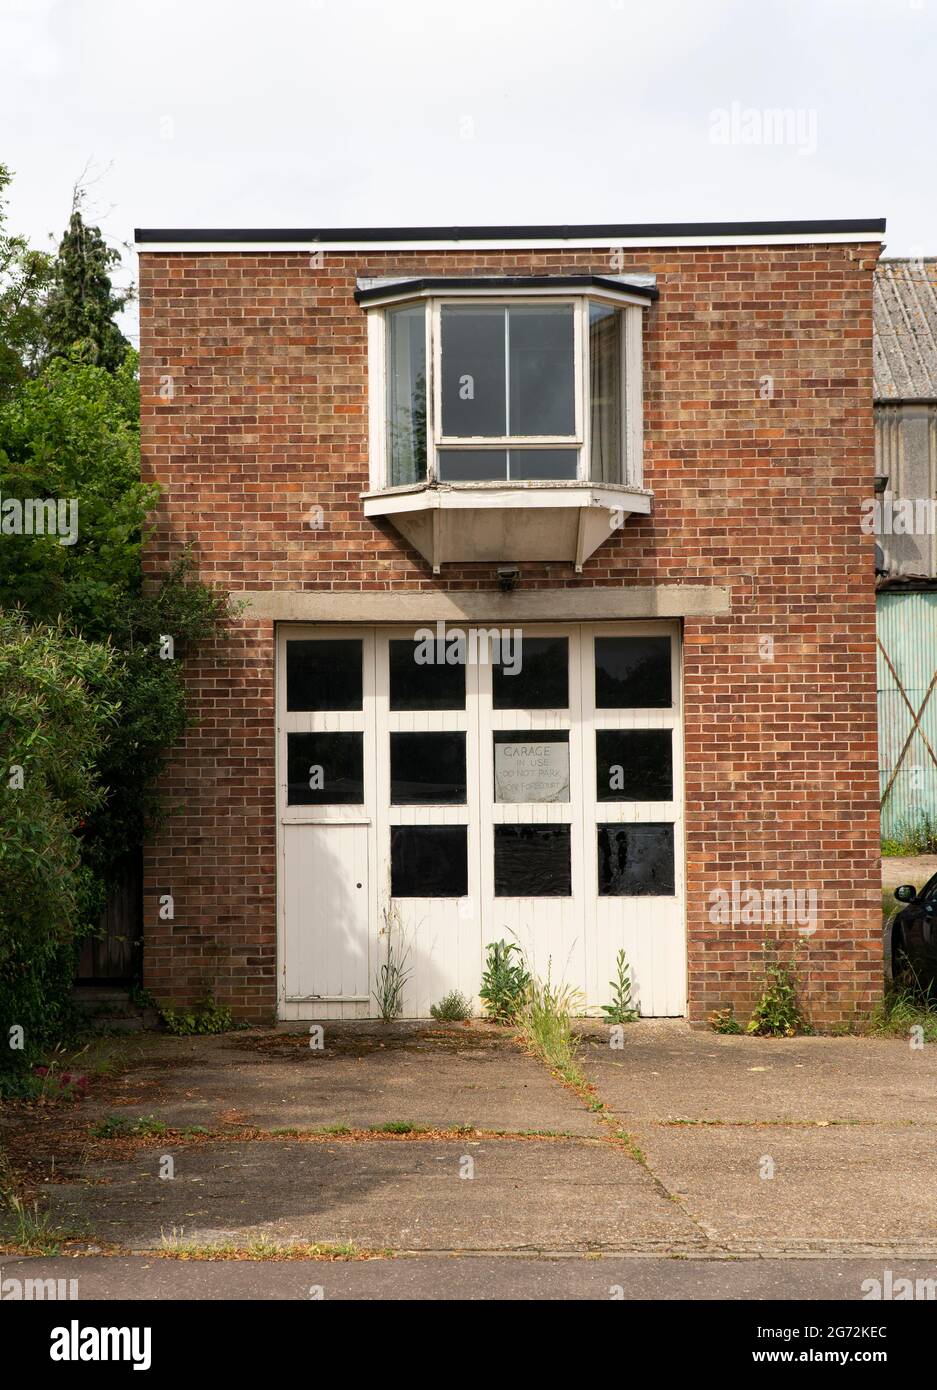 Old abandoned garage premises Stock Photo